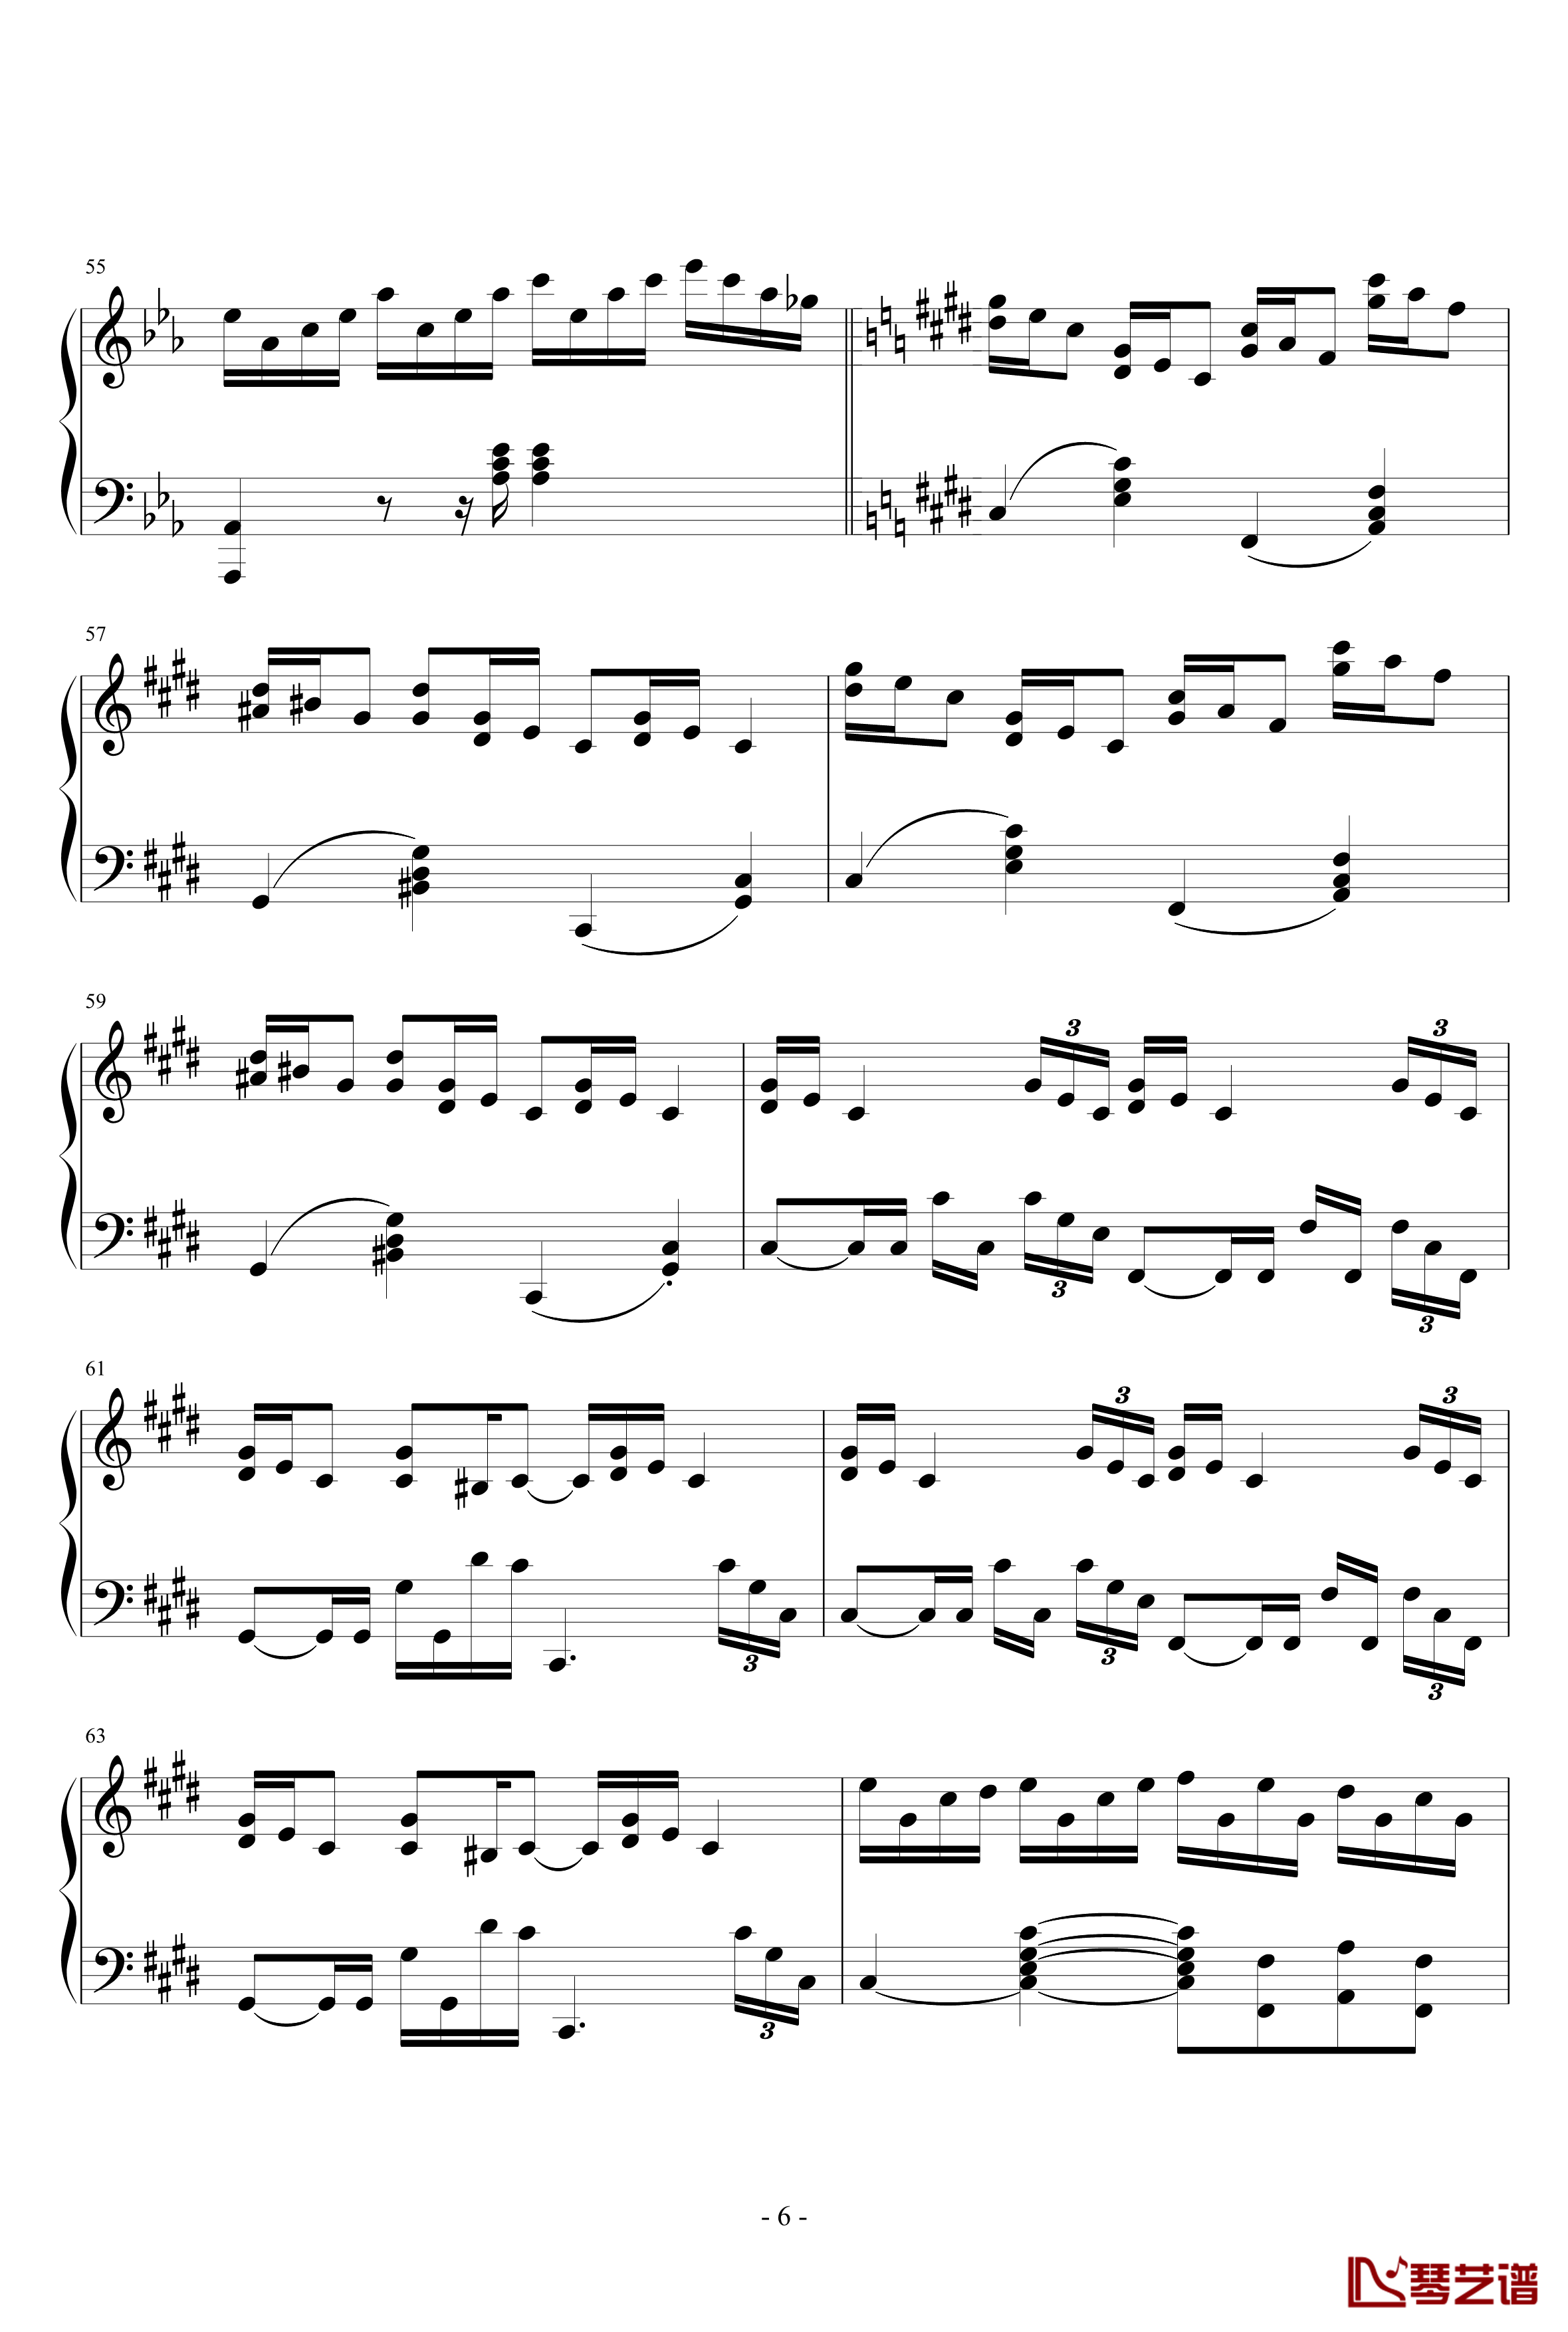 克罗地亚狂想曲钢琴谱-天津演奏会原版-马克西姆-Maksim·Mrvica6